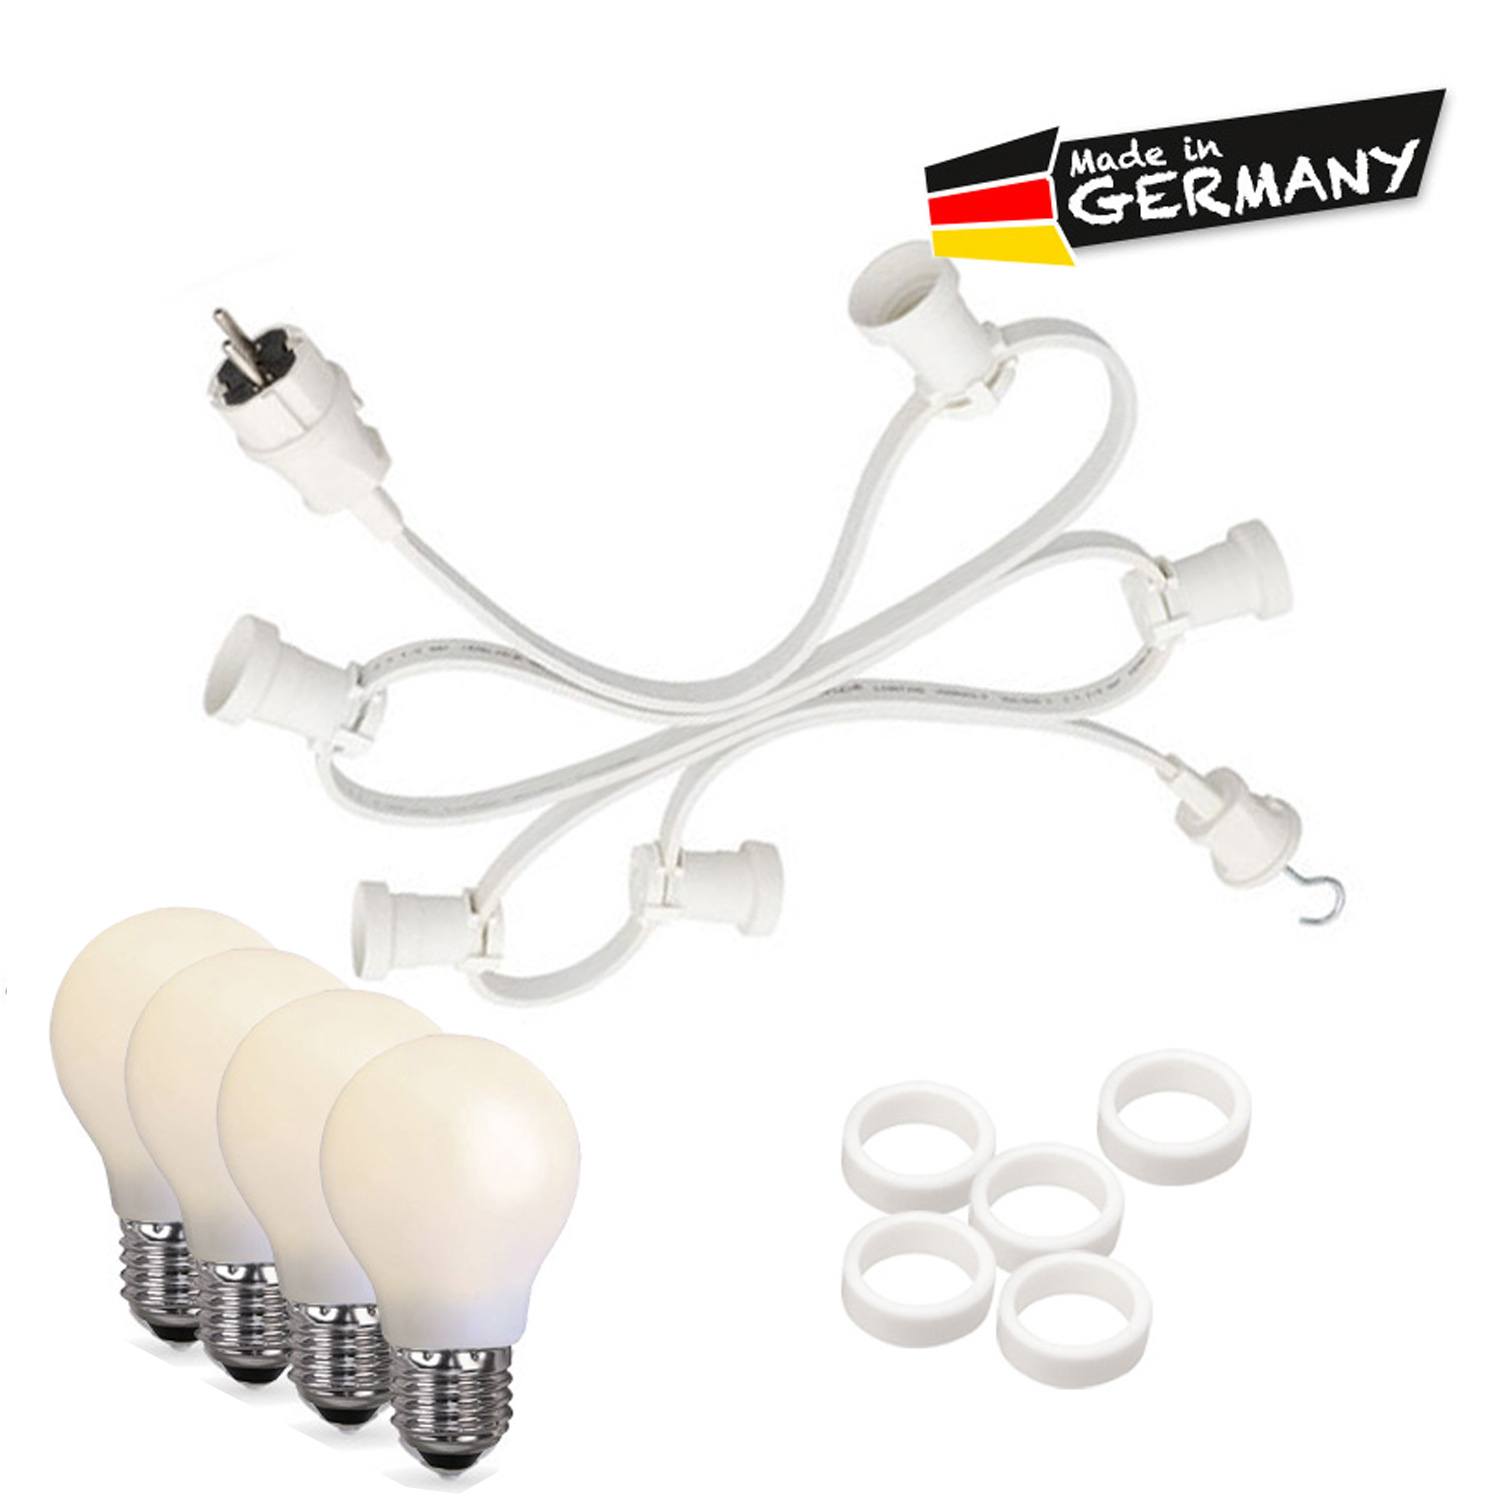 Illu-/Partylichterkette 5m - Außen - Made in Germany - 10 bruchfeste opale LED Tropfenlampen